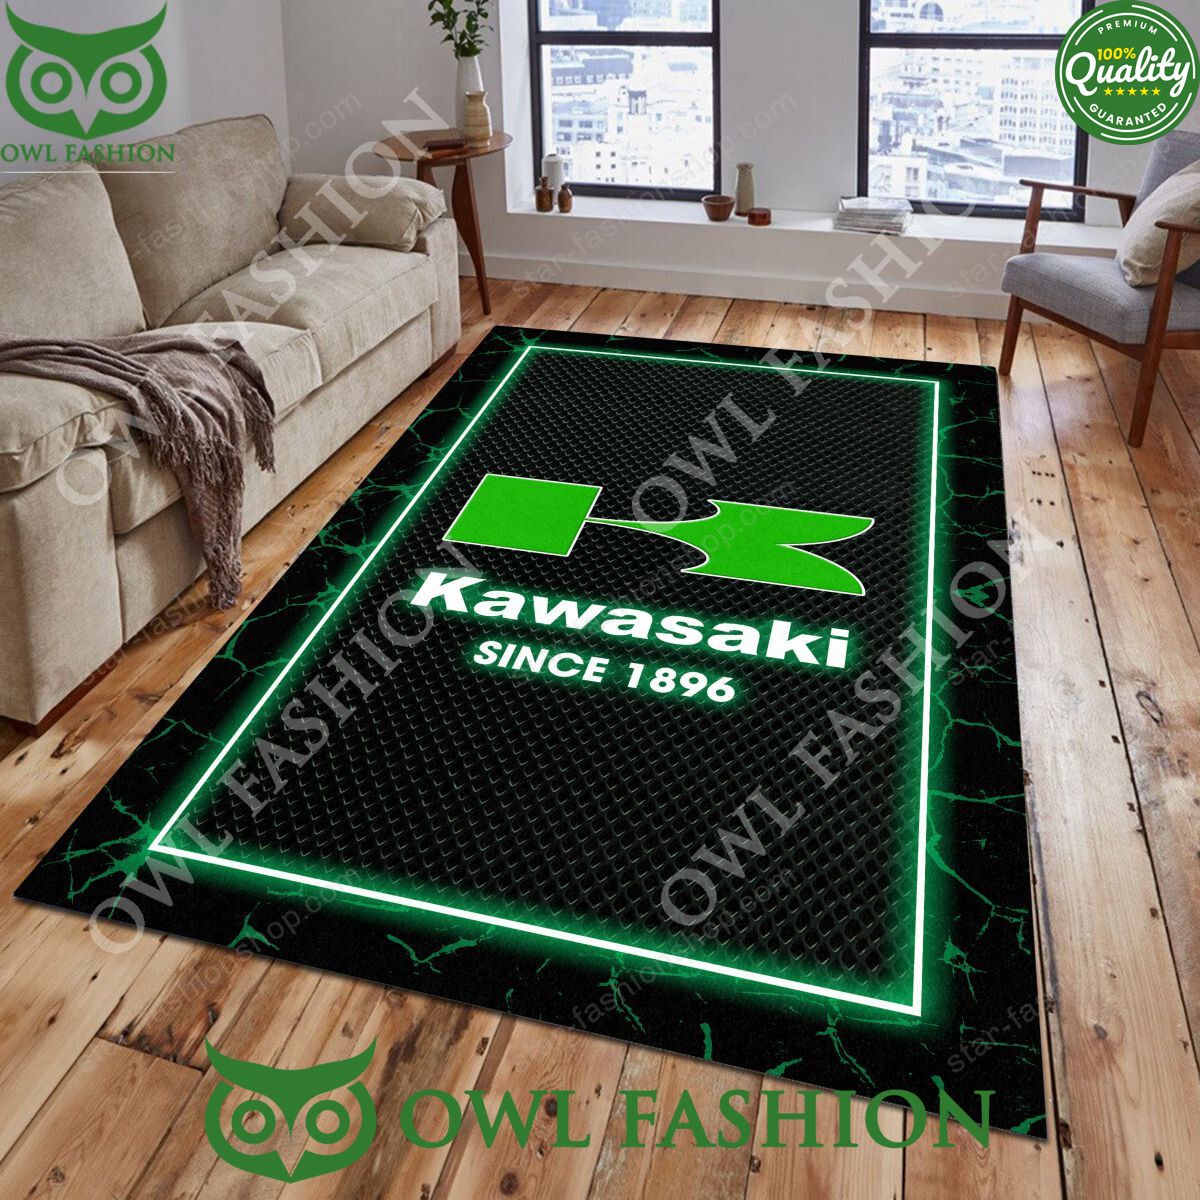 Kawasaki Motorcycle Lighting Pattern Carpet Rug Royal Pic of yours